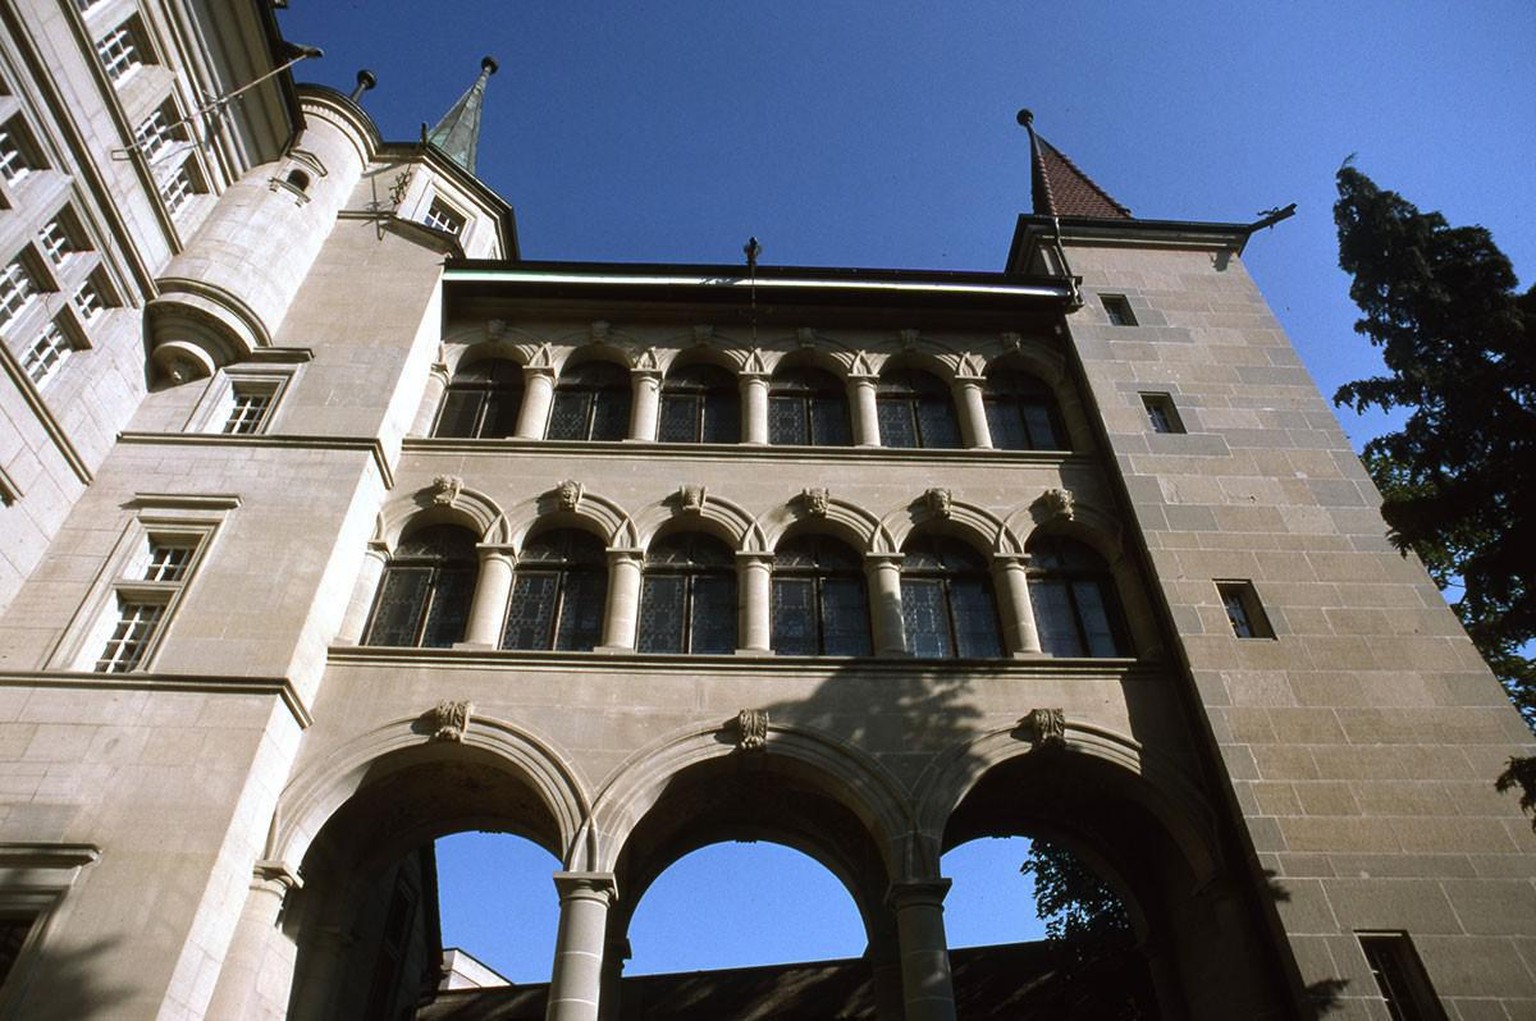 So schliesst sich der Kreis: Das damalige Palais Ratze ist das heutige Museum für Kunst und Geschichte in Freiburg.
https://commons.wikimedia.org/wiki/File:Friburgo._Dettaglio_della_facciata_del_Mus%C ...